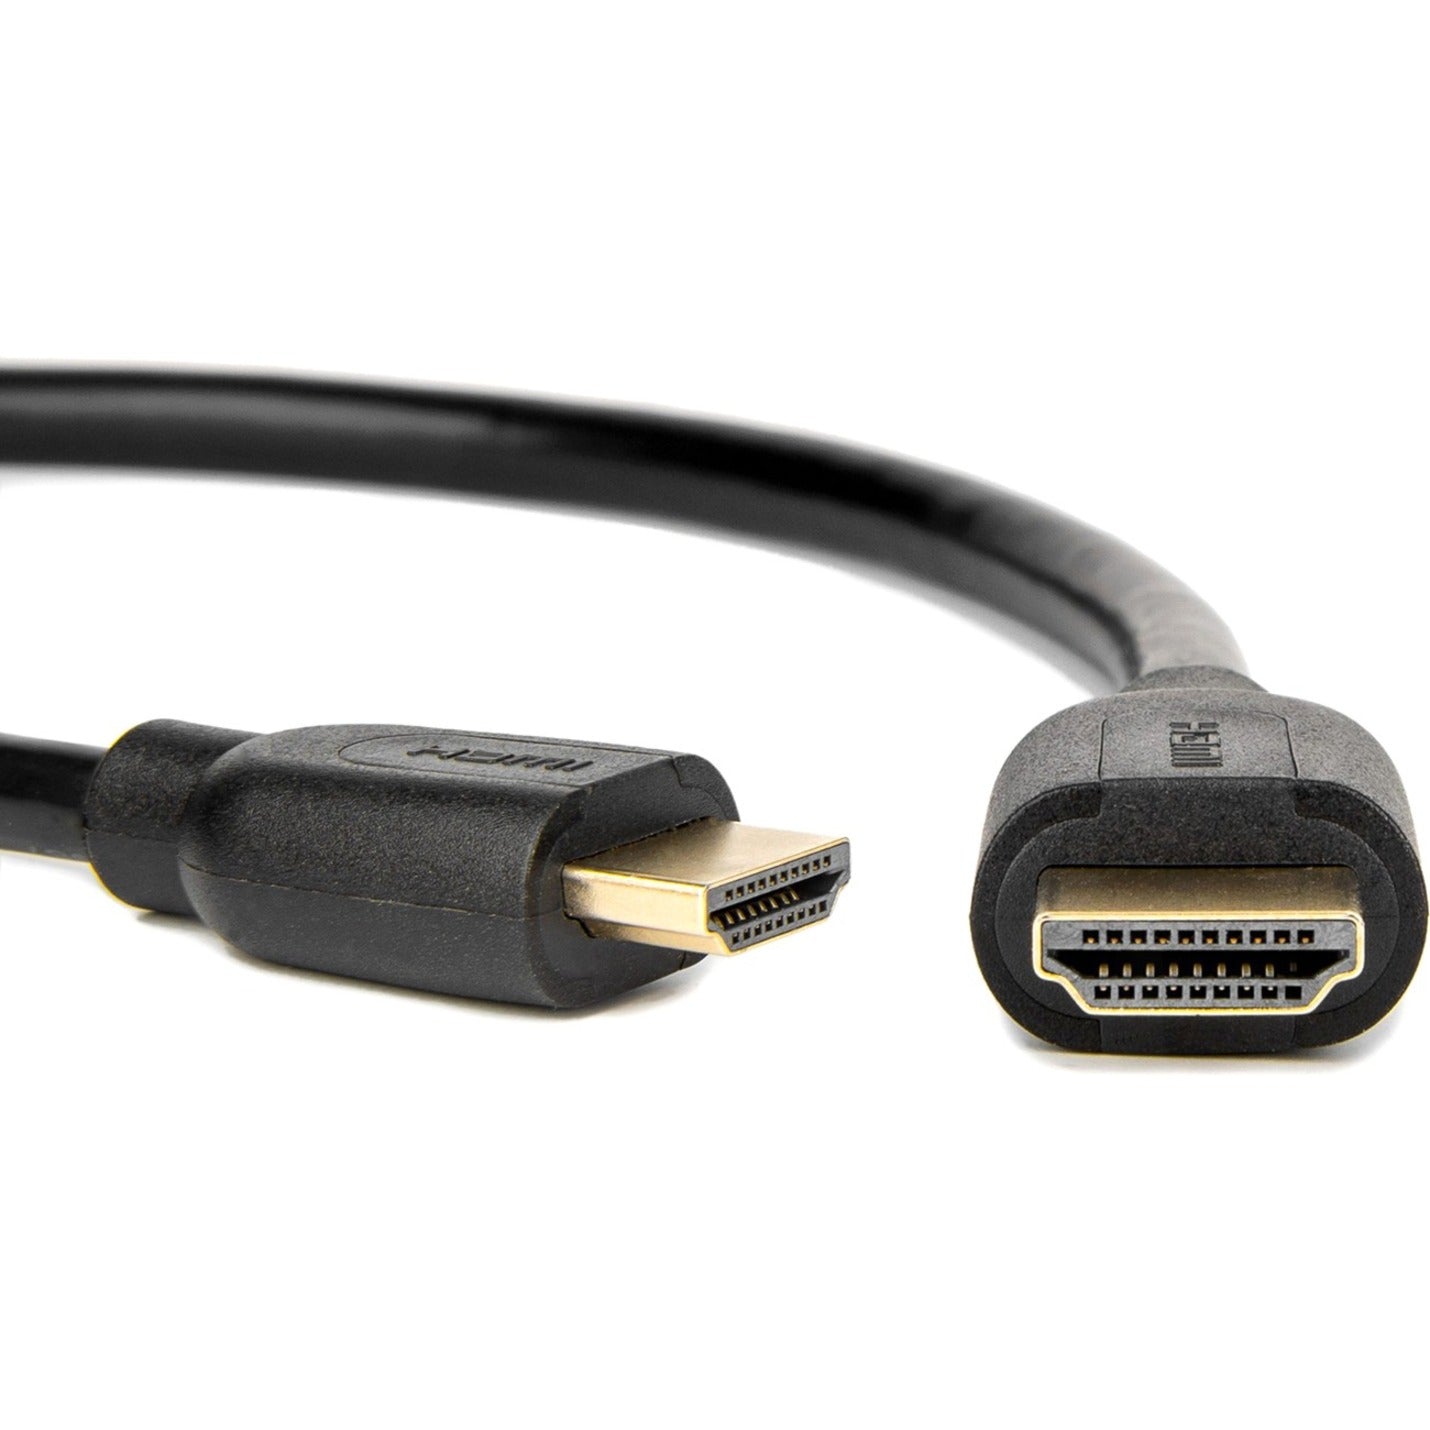 Rocstor Y10C161-B1 HDMI Audio/Video Cable, 10 ft, 4K2K 60Hz 18Gbps, Lifetime Warranty